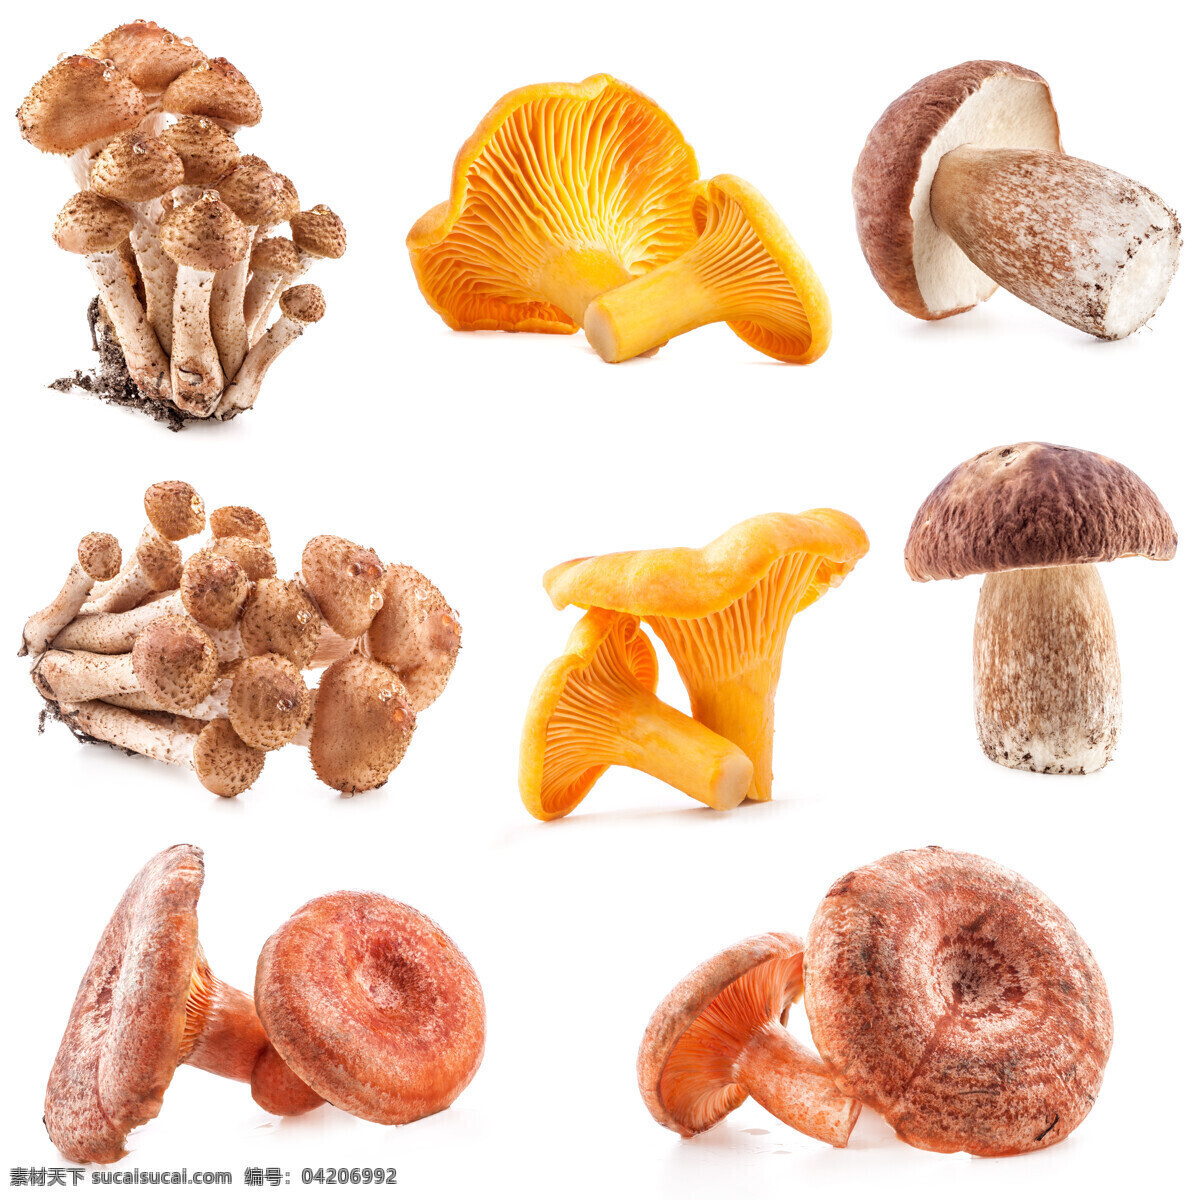 蘑菇 菌类 新鲜蘑菇 菌类食材 新鲜蔬菜 蘑菇图片 餐饮美食